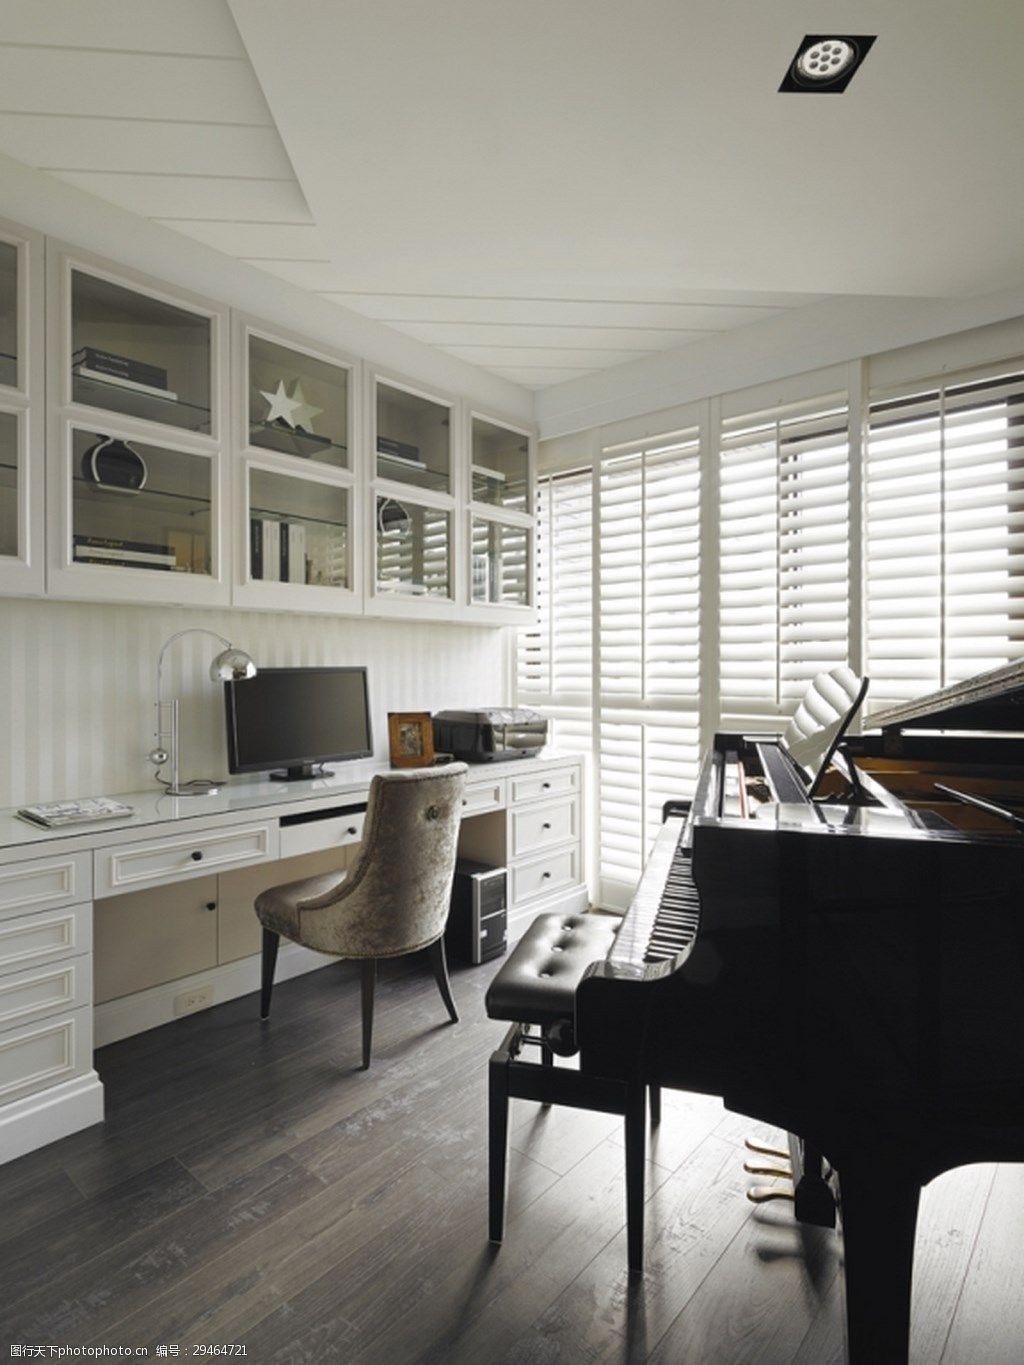 关键词:简约白色舒适美式书房装修效果图 百叶窗 黑色钢琴 金属台灯